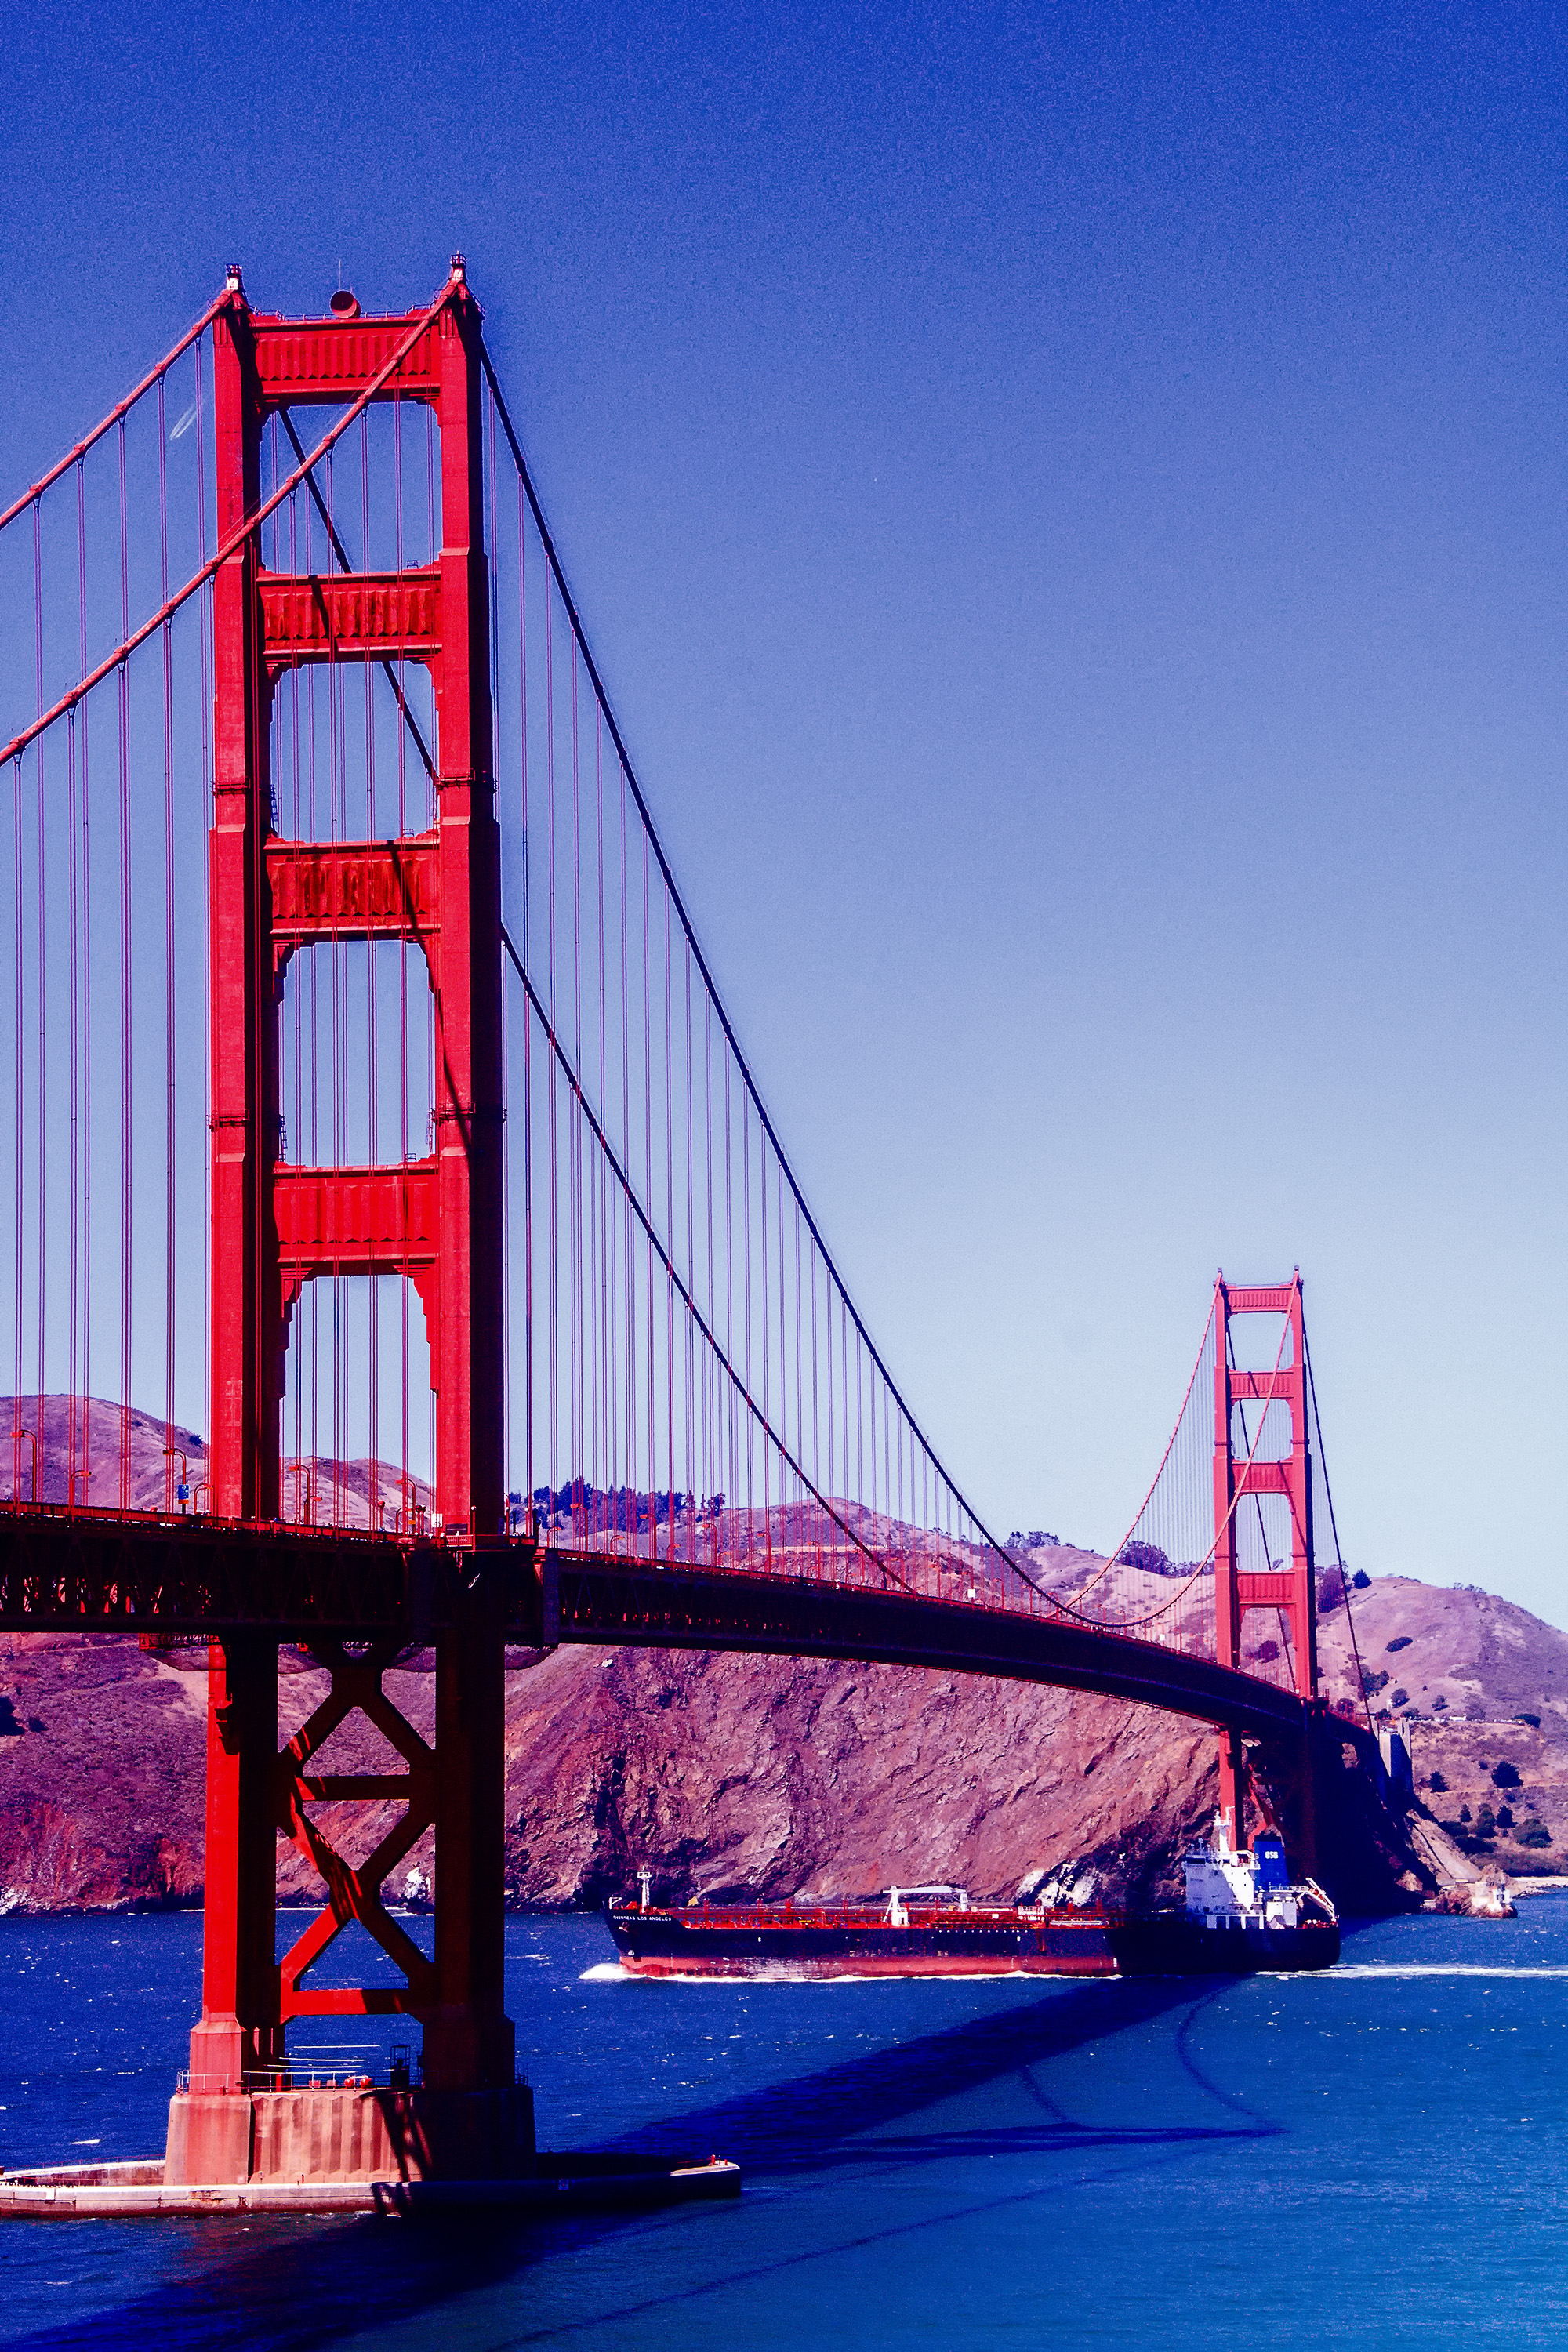 6207-Golden-Gate-Bridge-with-cargo-ship-going-through